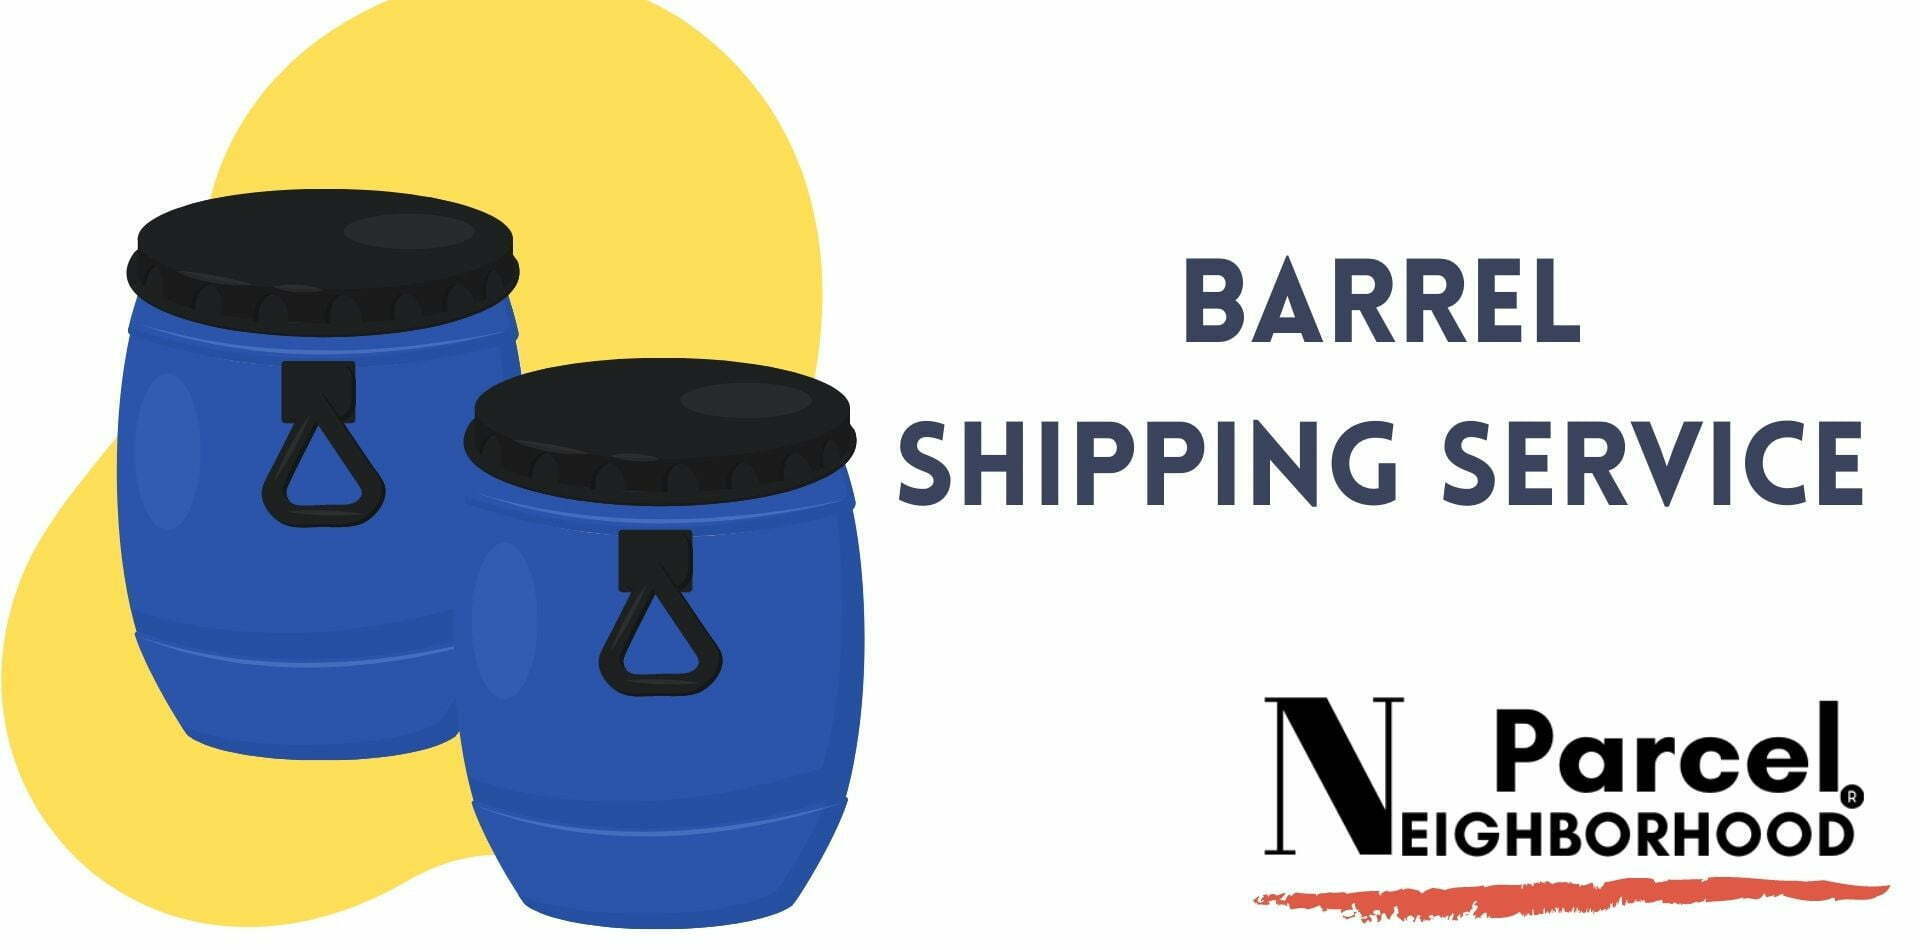 Barrel Shipping Service Company